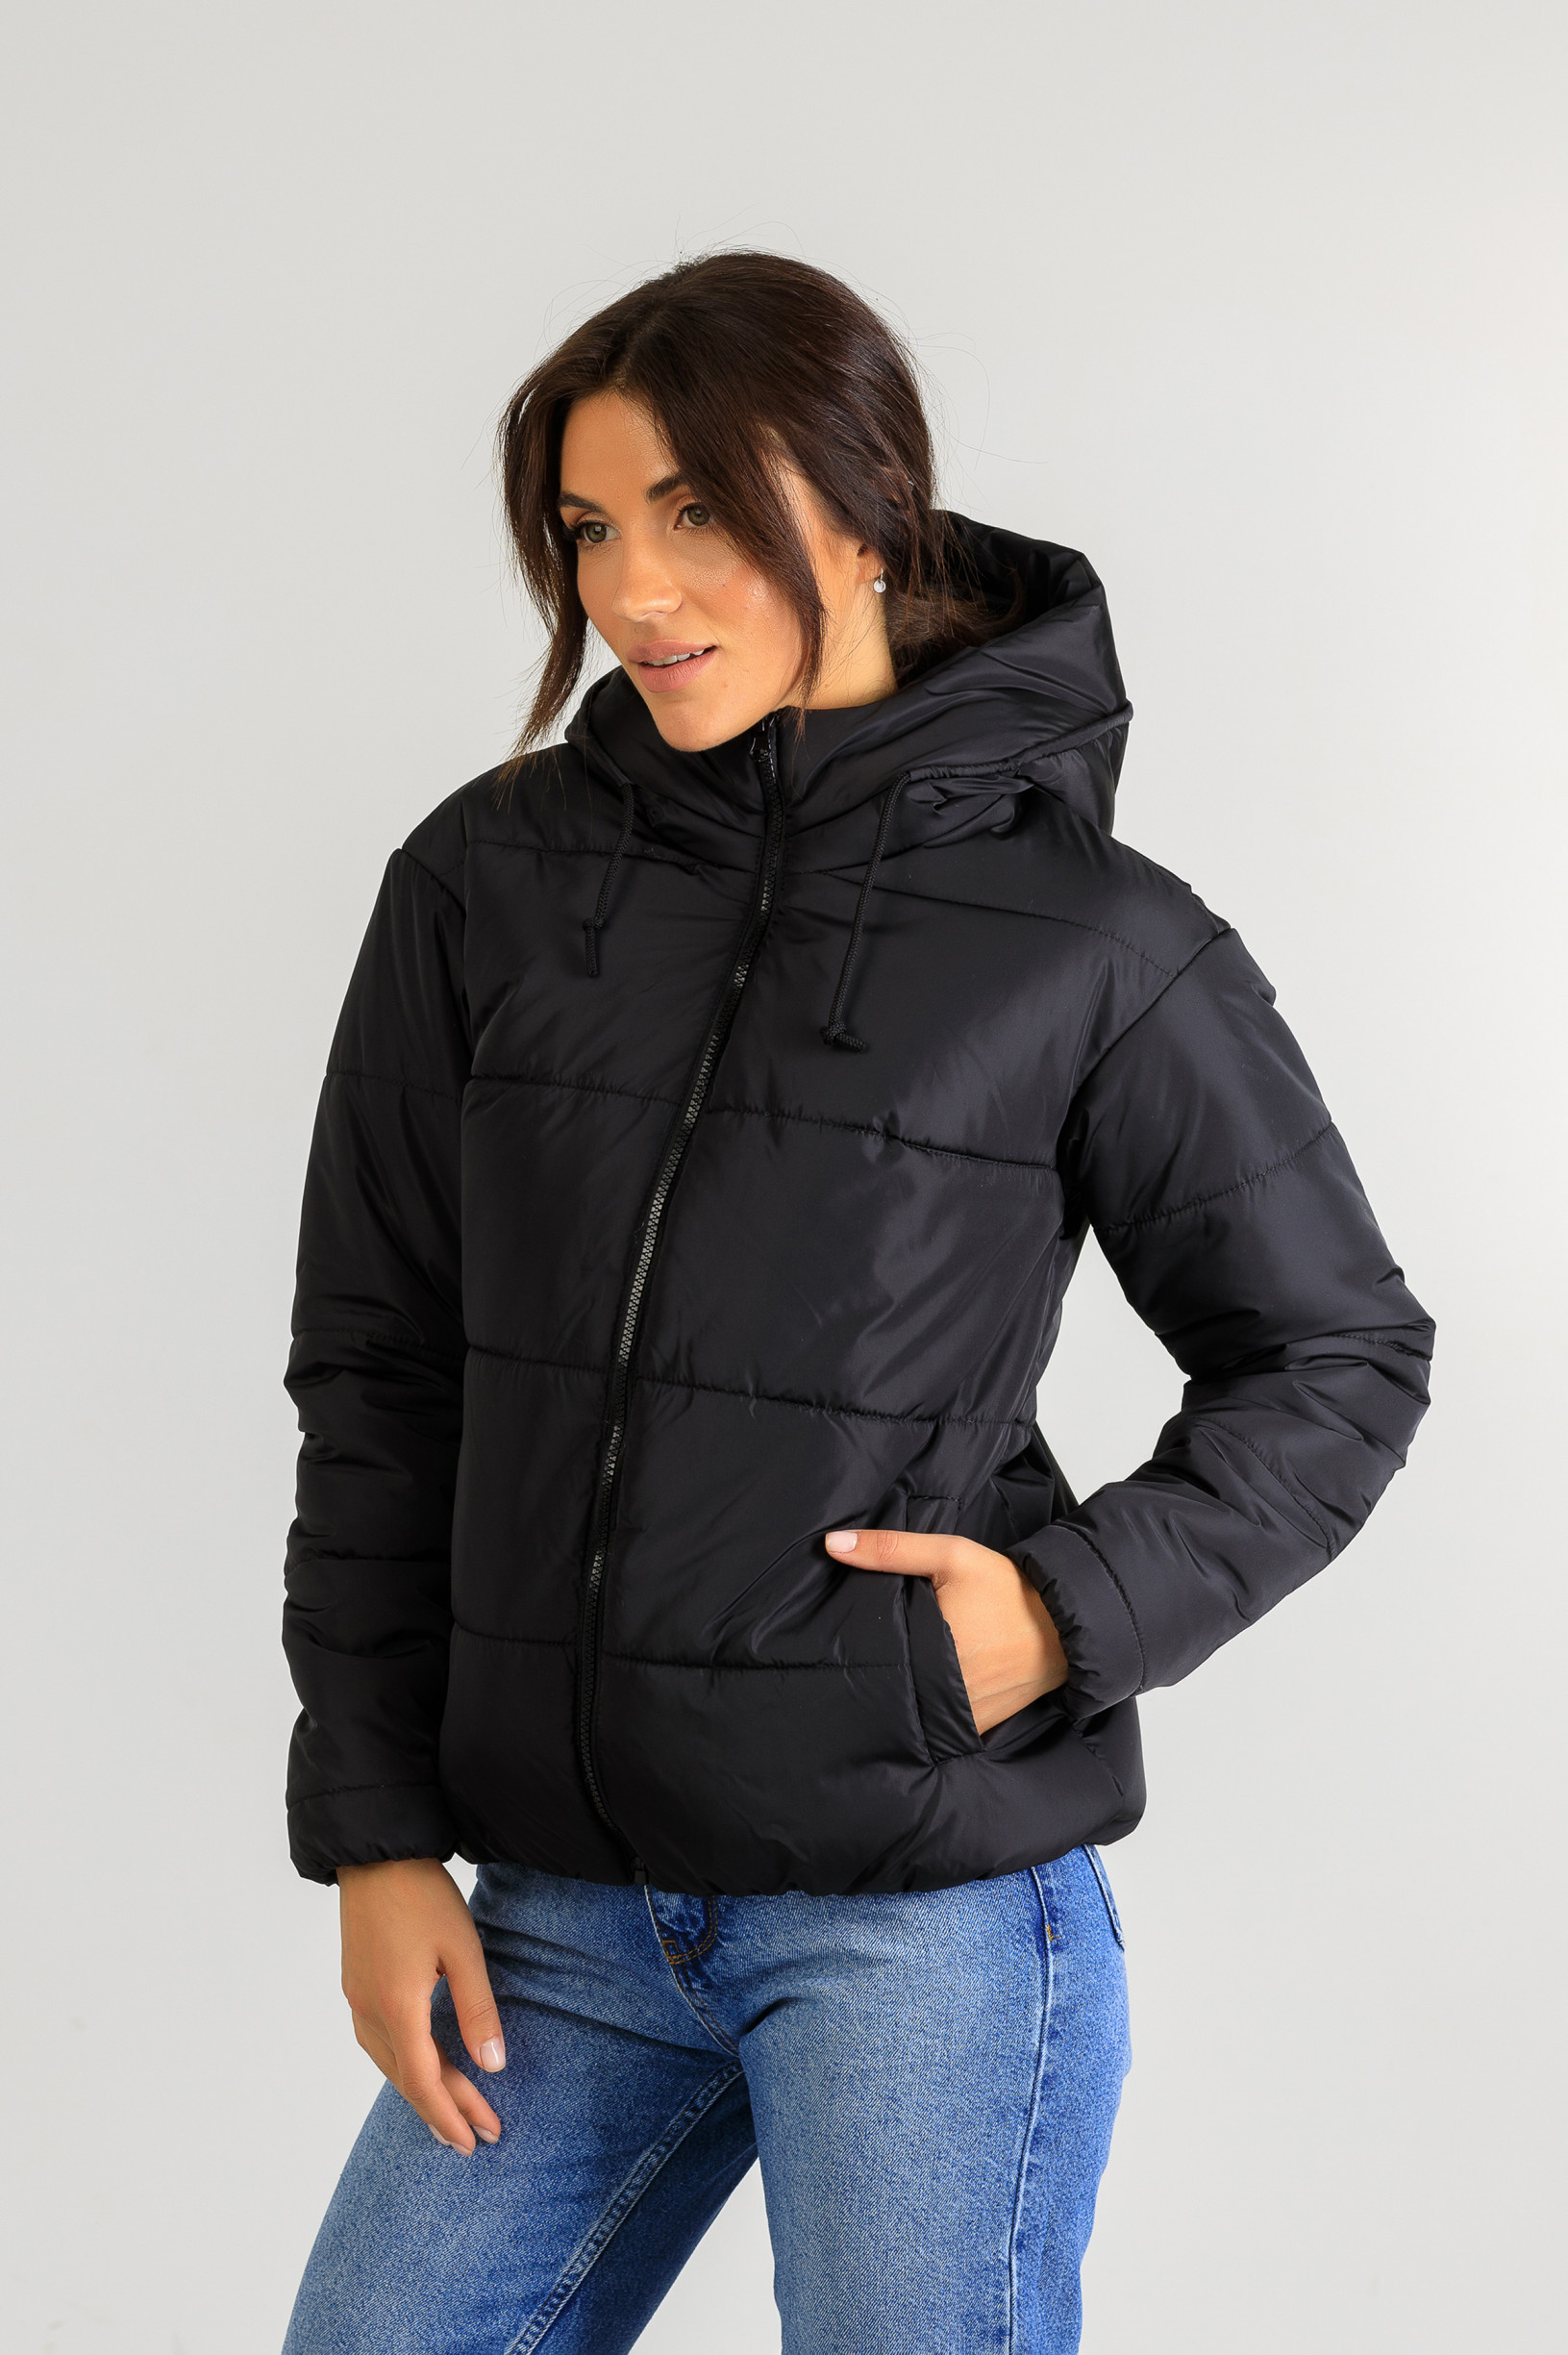 Демисезонная женская стильная куртка Тахо чёрного цвета